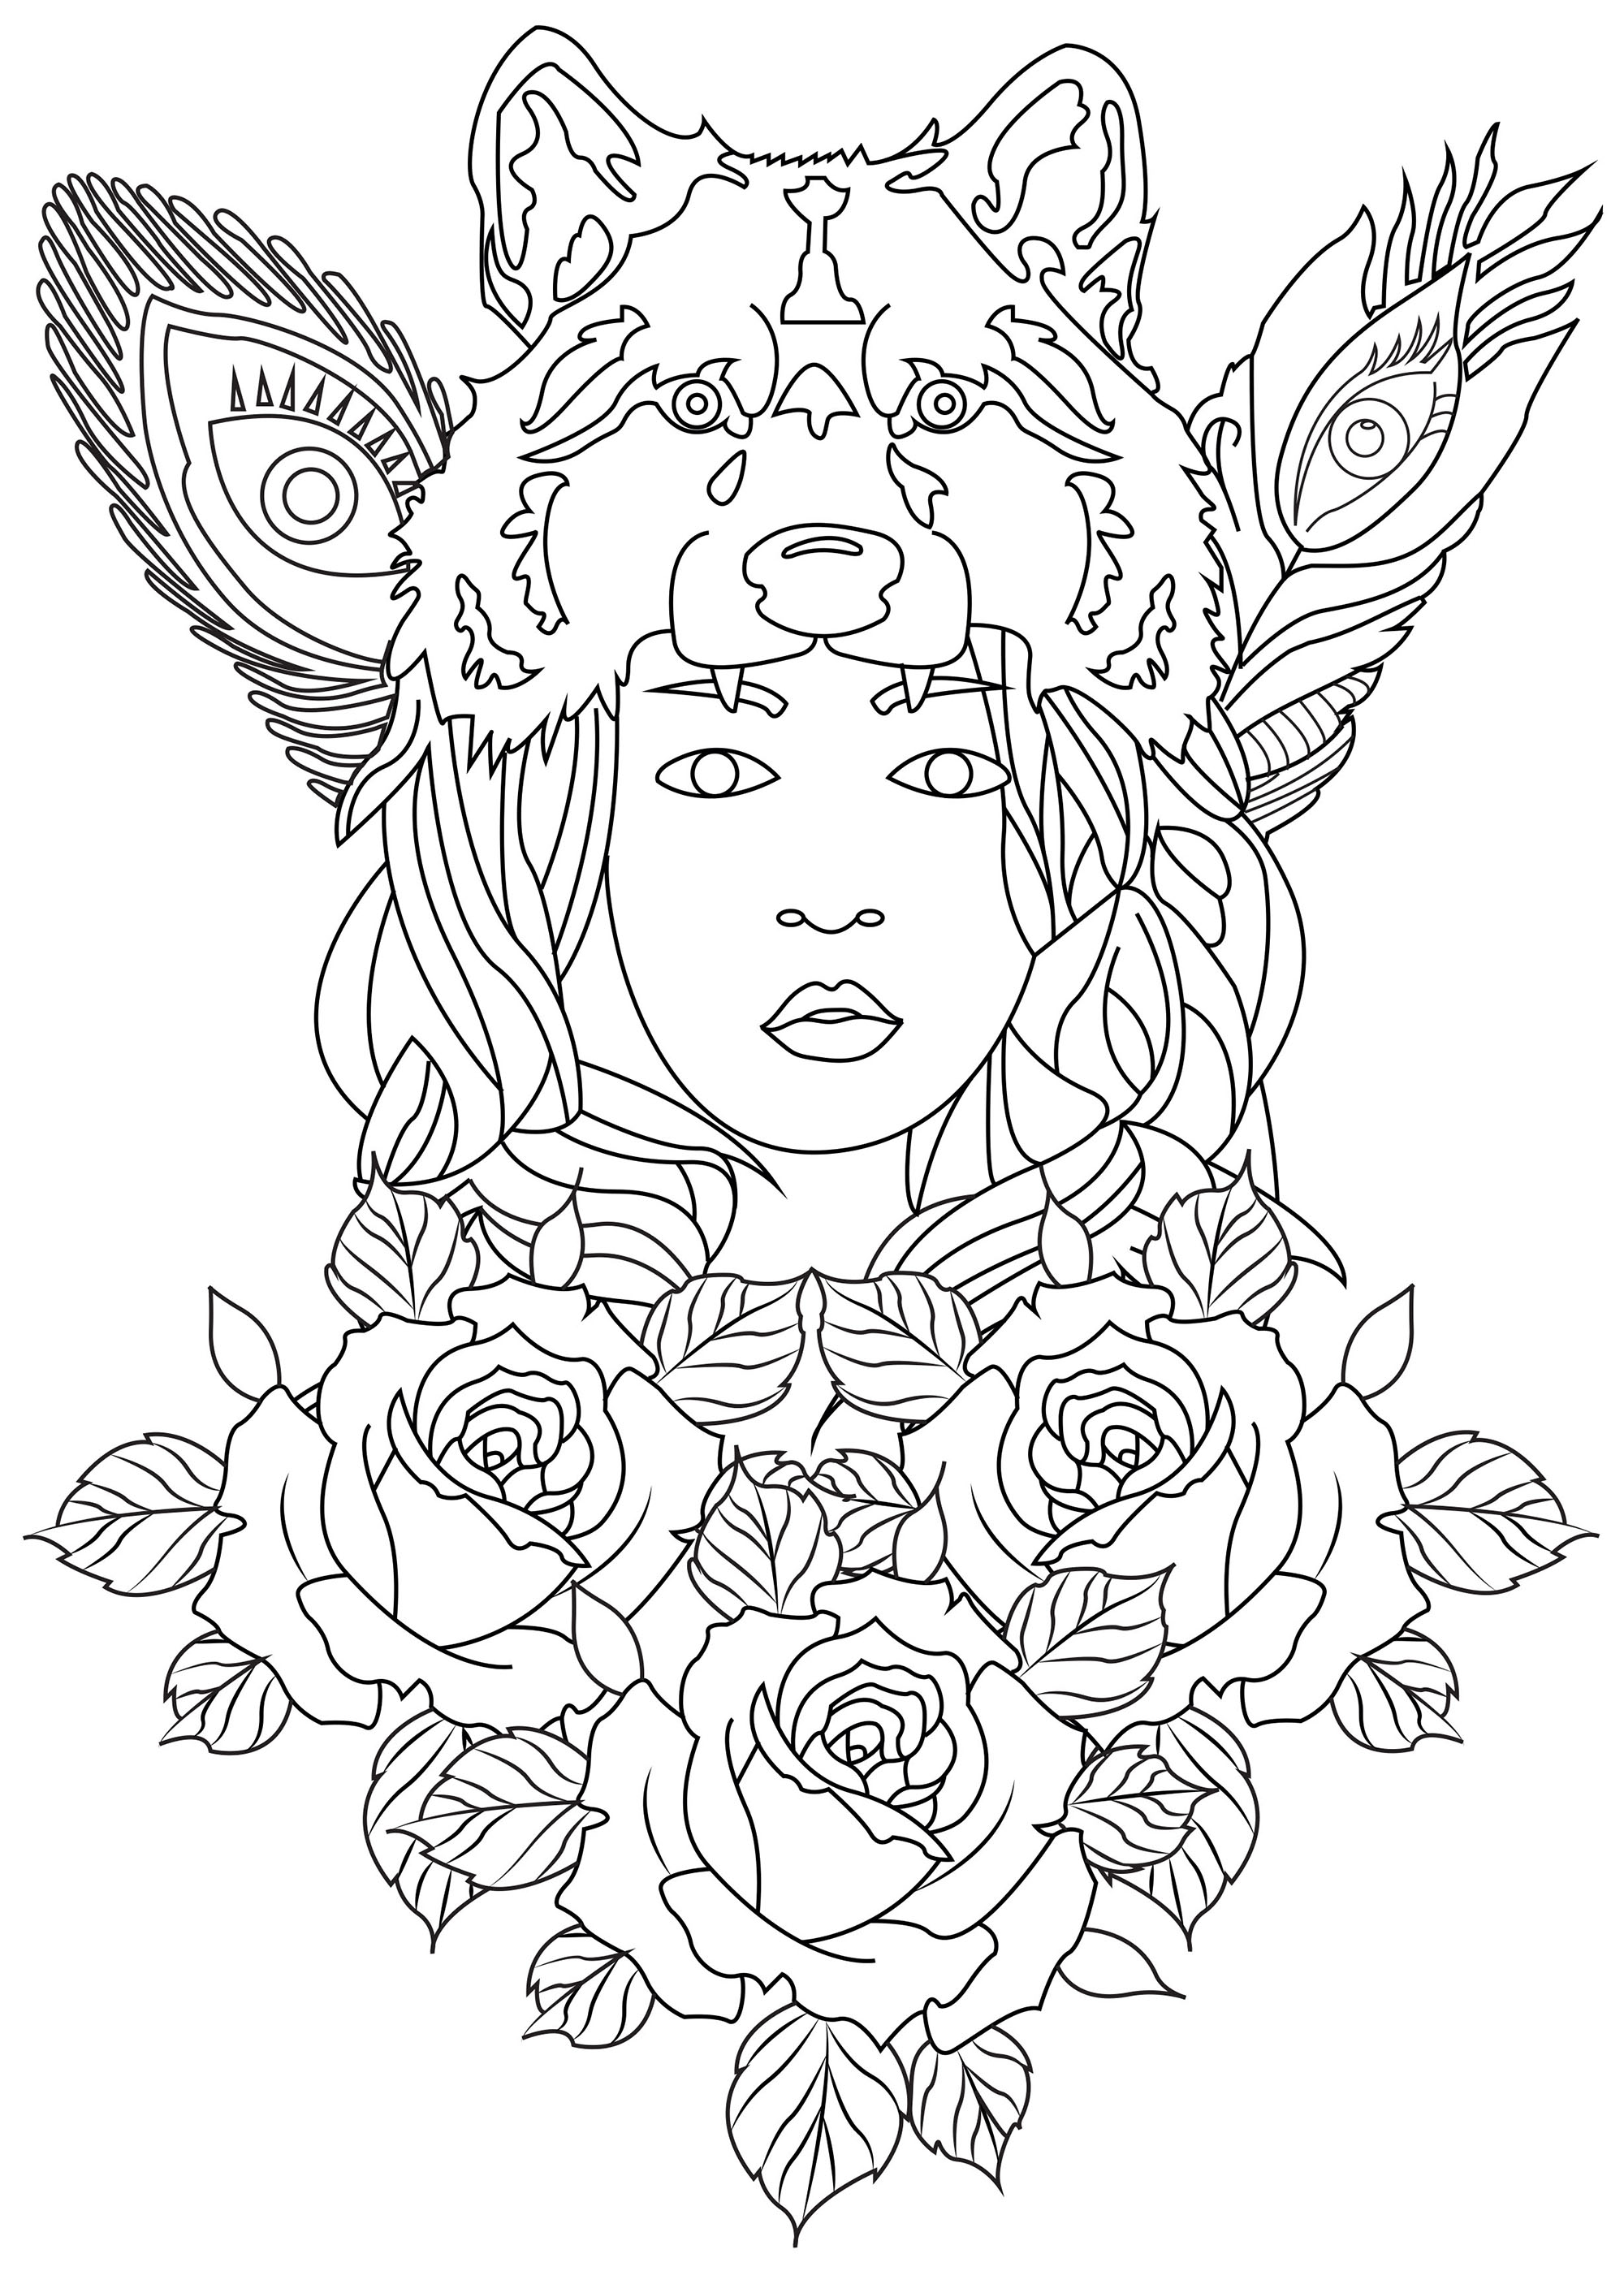 Colorea esta 'Mujer Lobo' y todas las rosas y plumas que la rodean